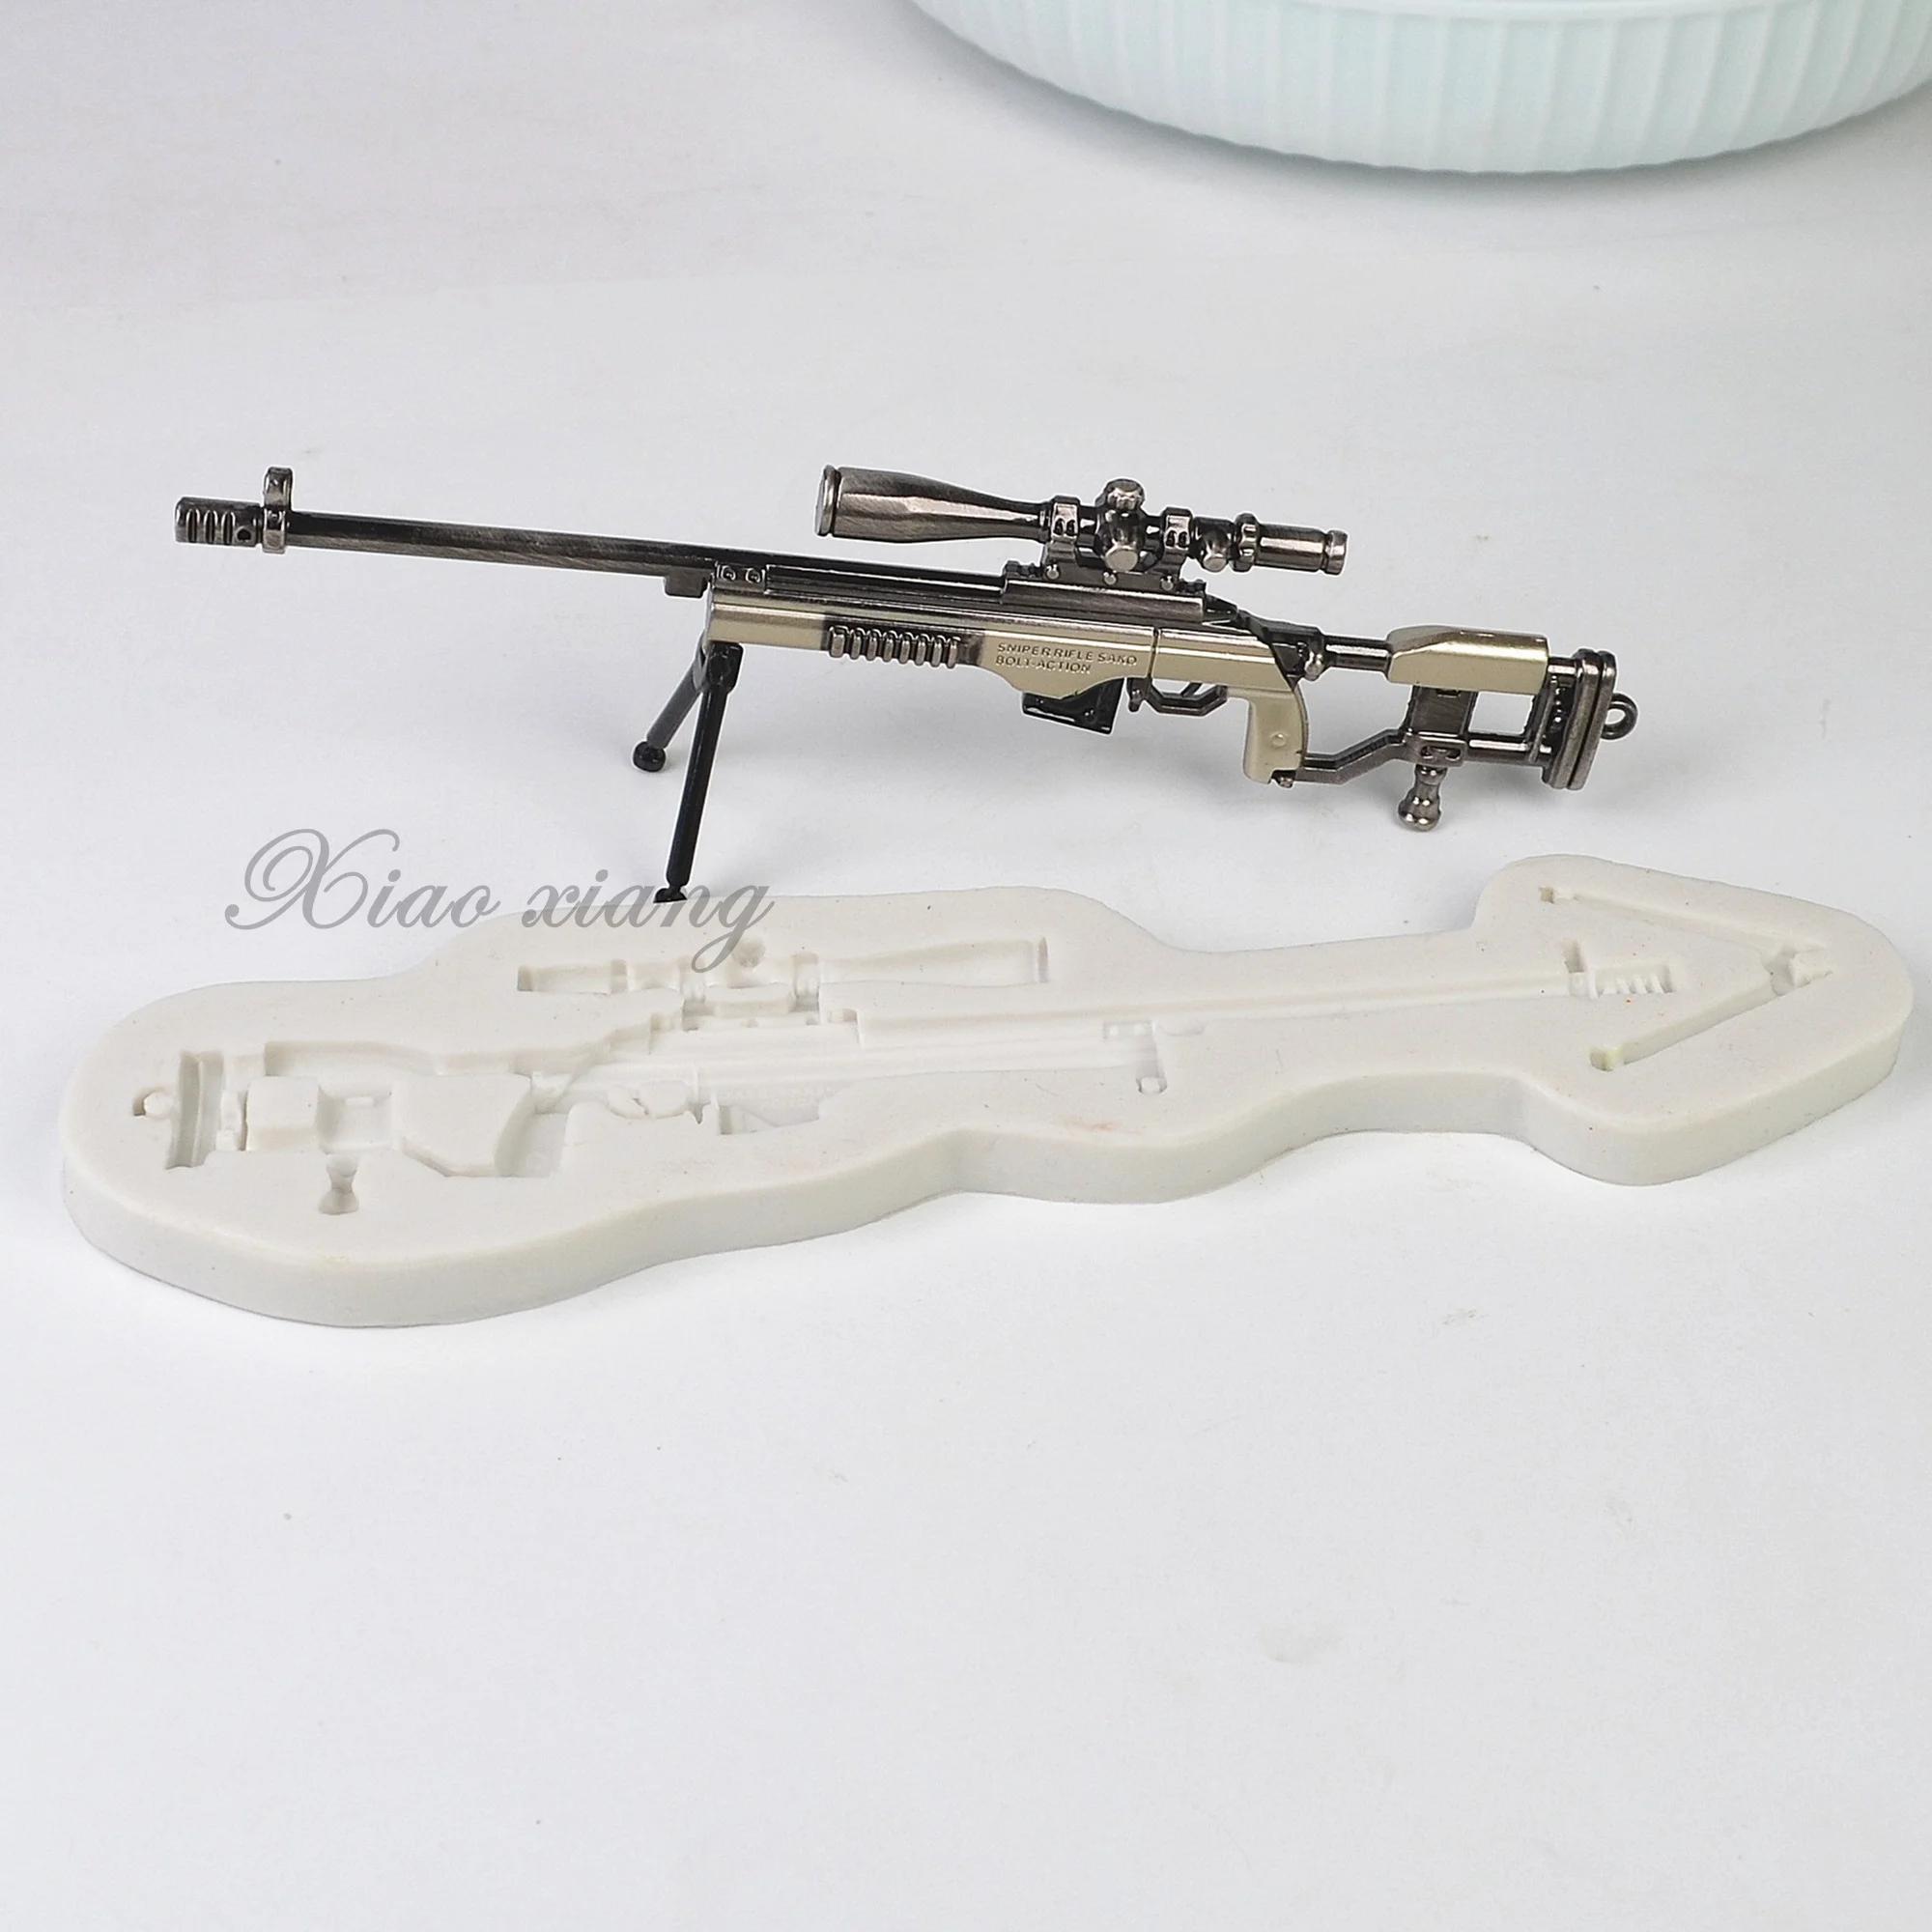 저격 소총 모양 실리콘 케이크 금형, 3D 건 초콜릿 페이스트리 비스킷 에폭시 수지 금형, DIY 주방 베이킹 쥬얼리 금형, FM2134